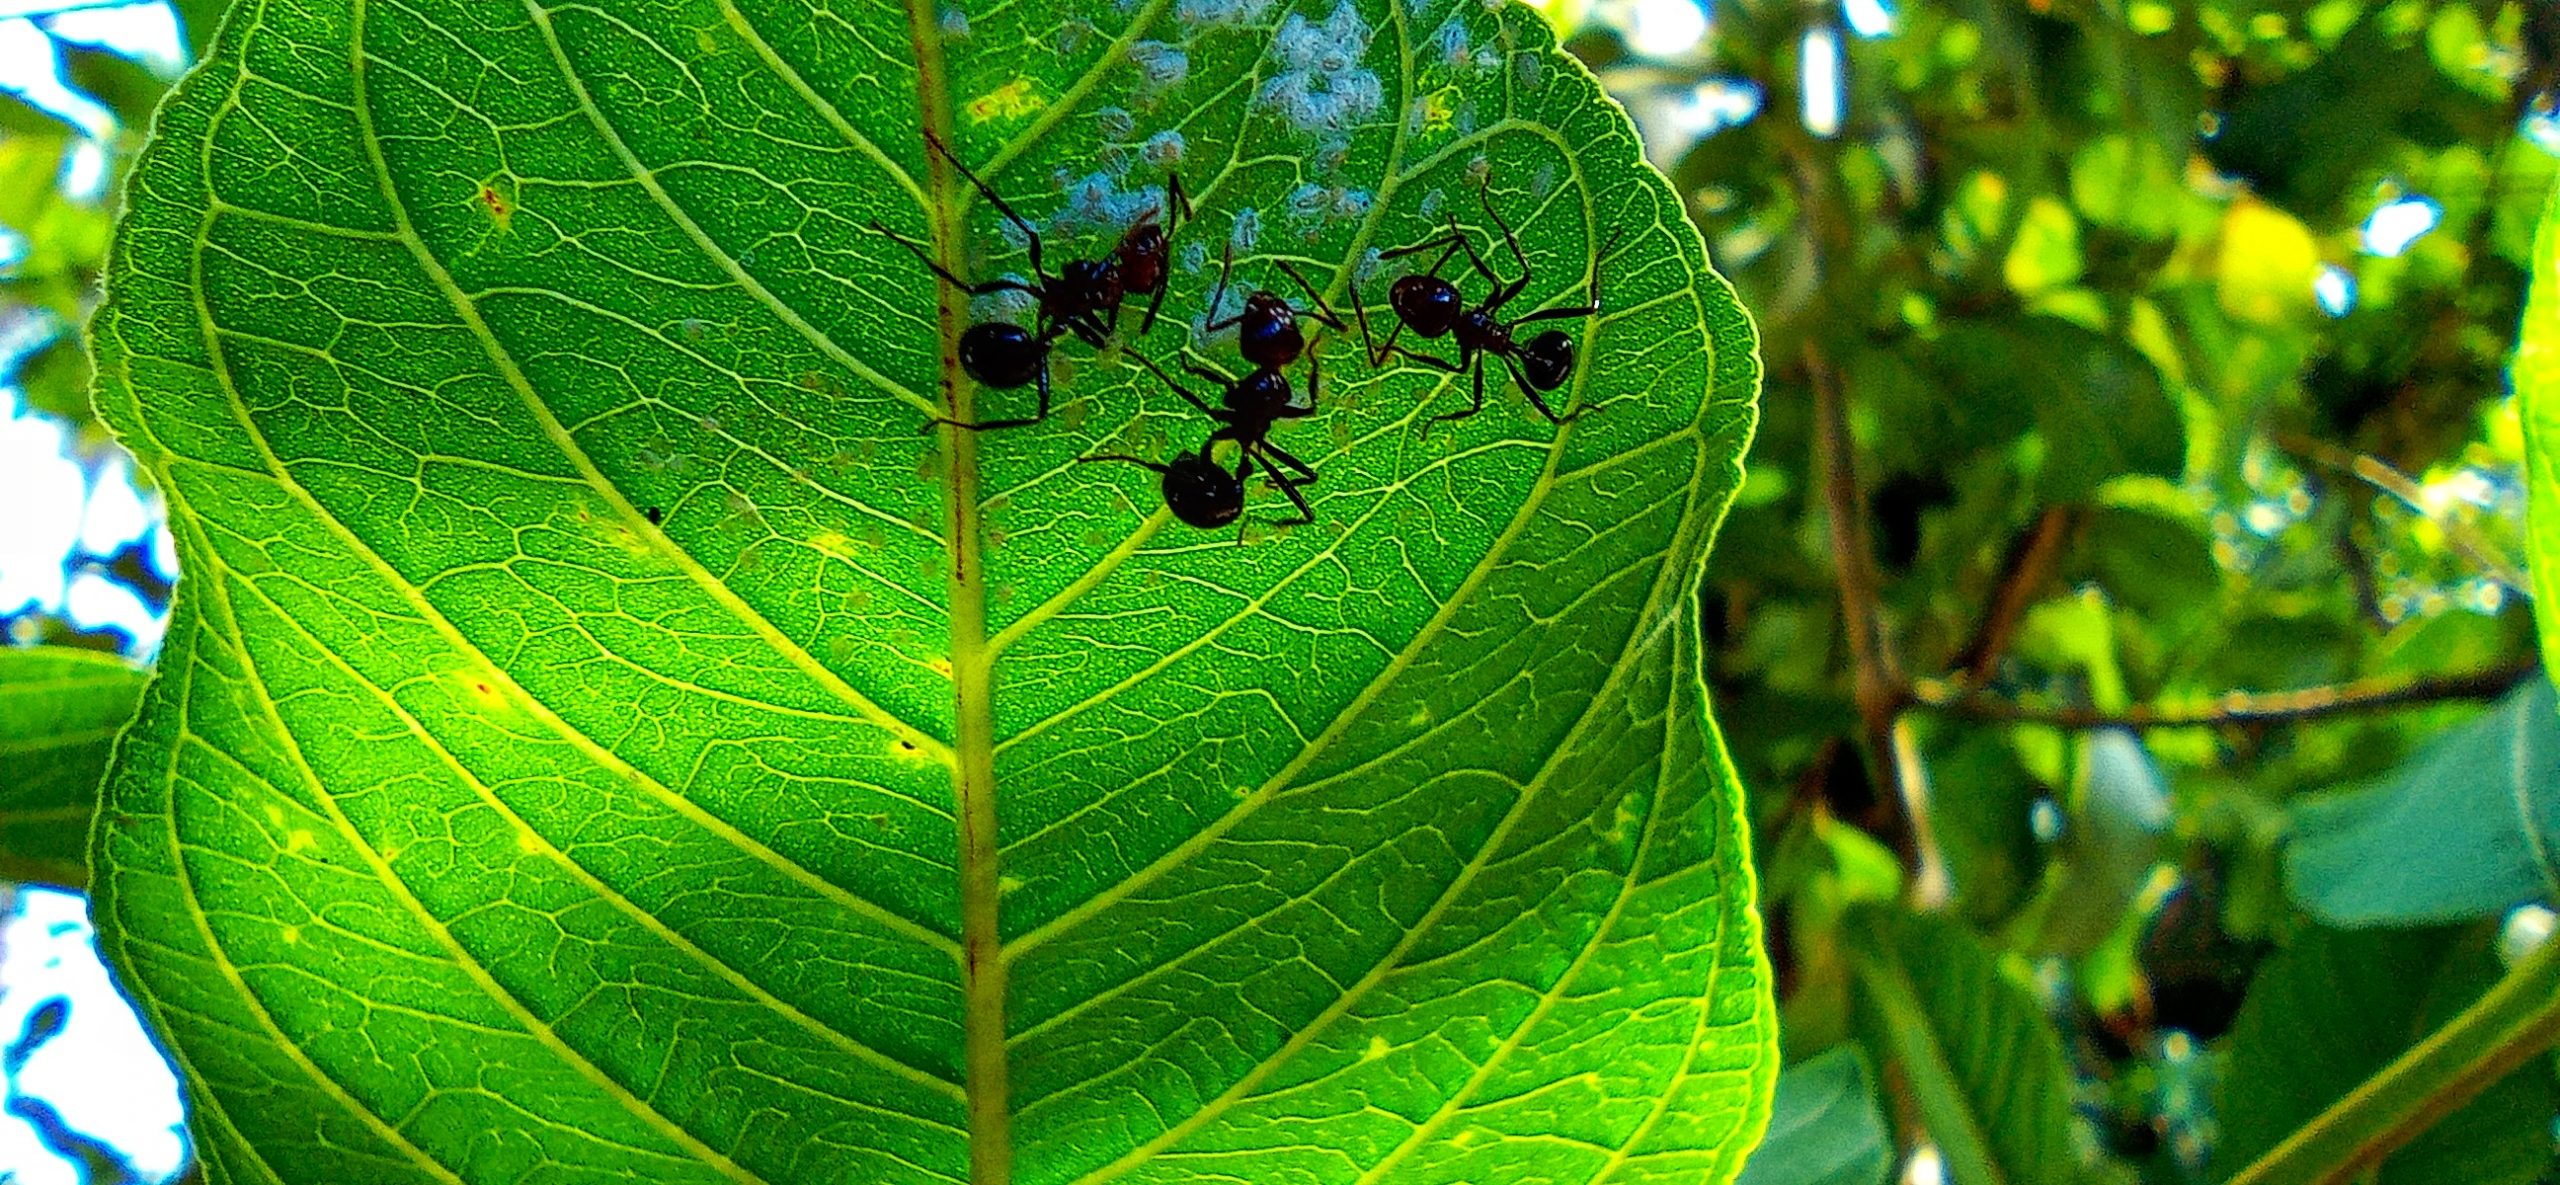 Ants on leaf